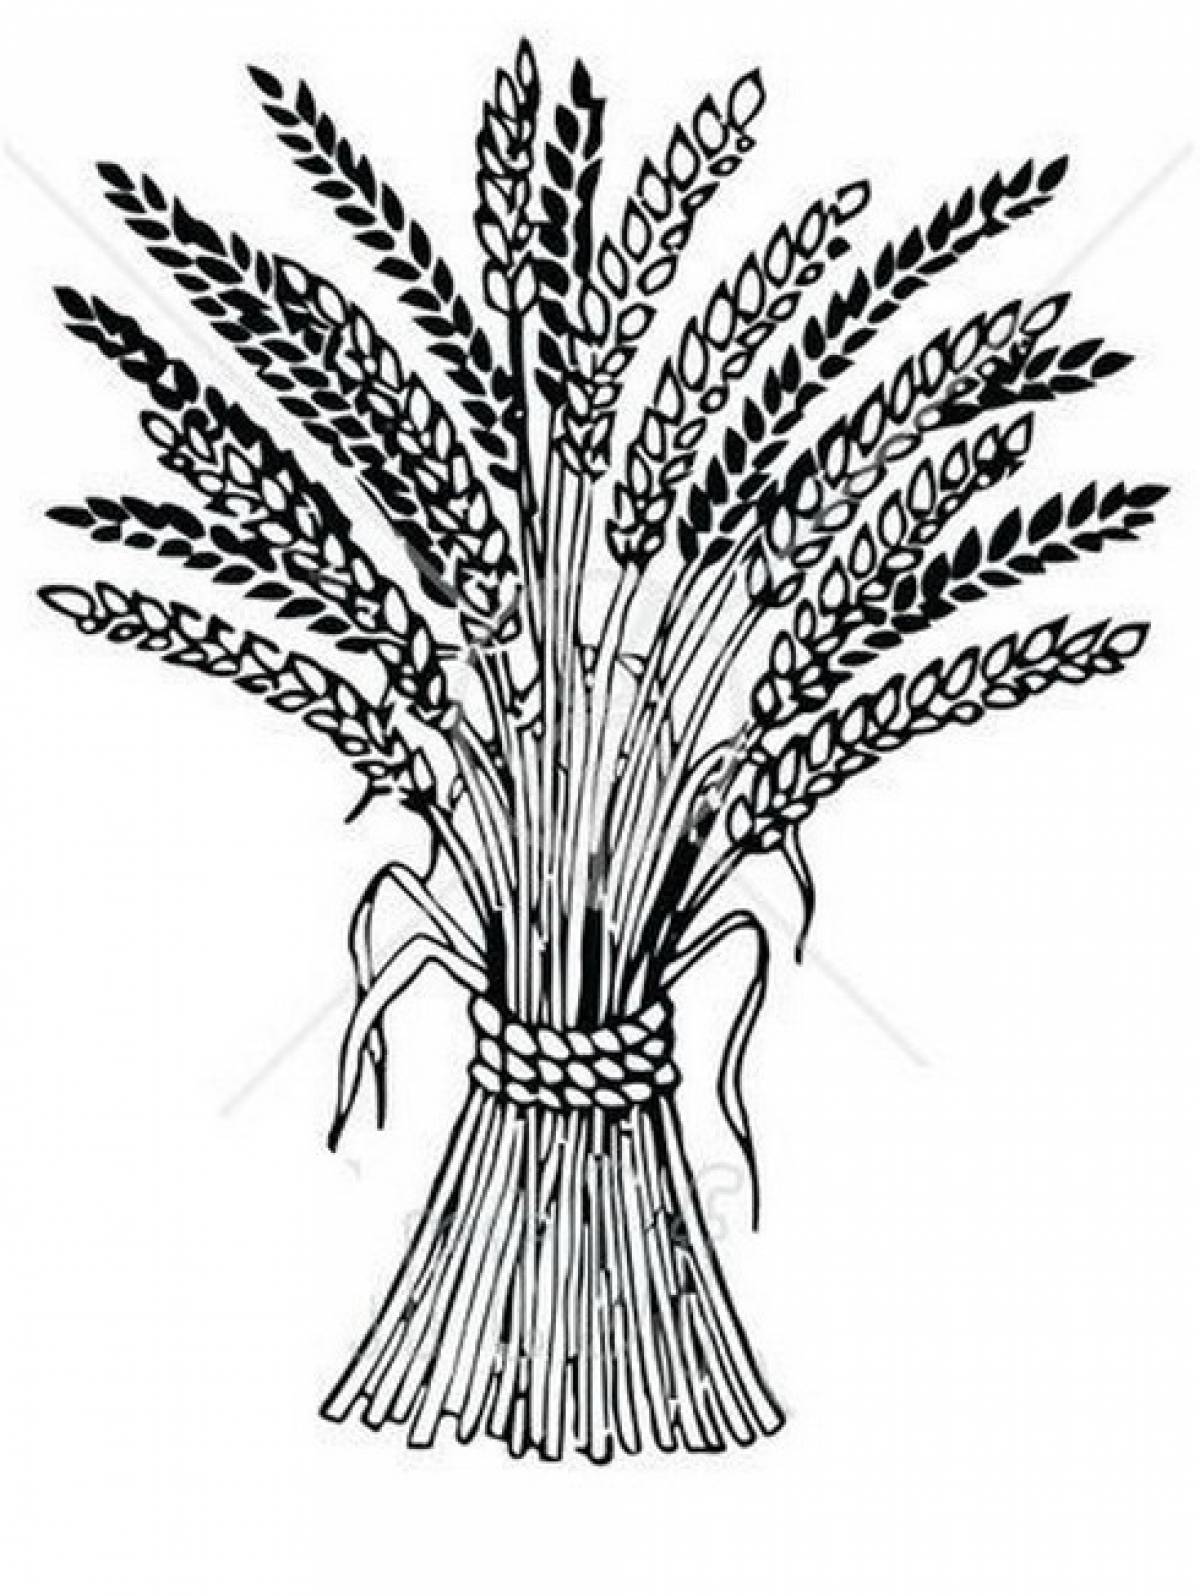 Сноп пшеницы